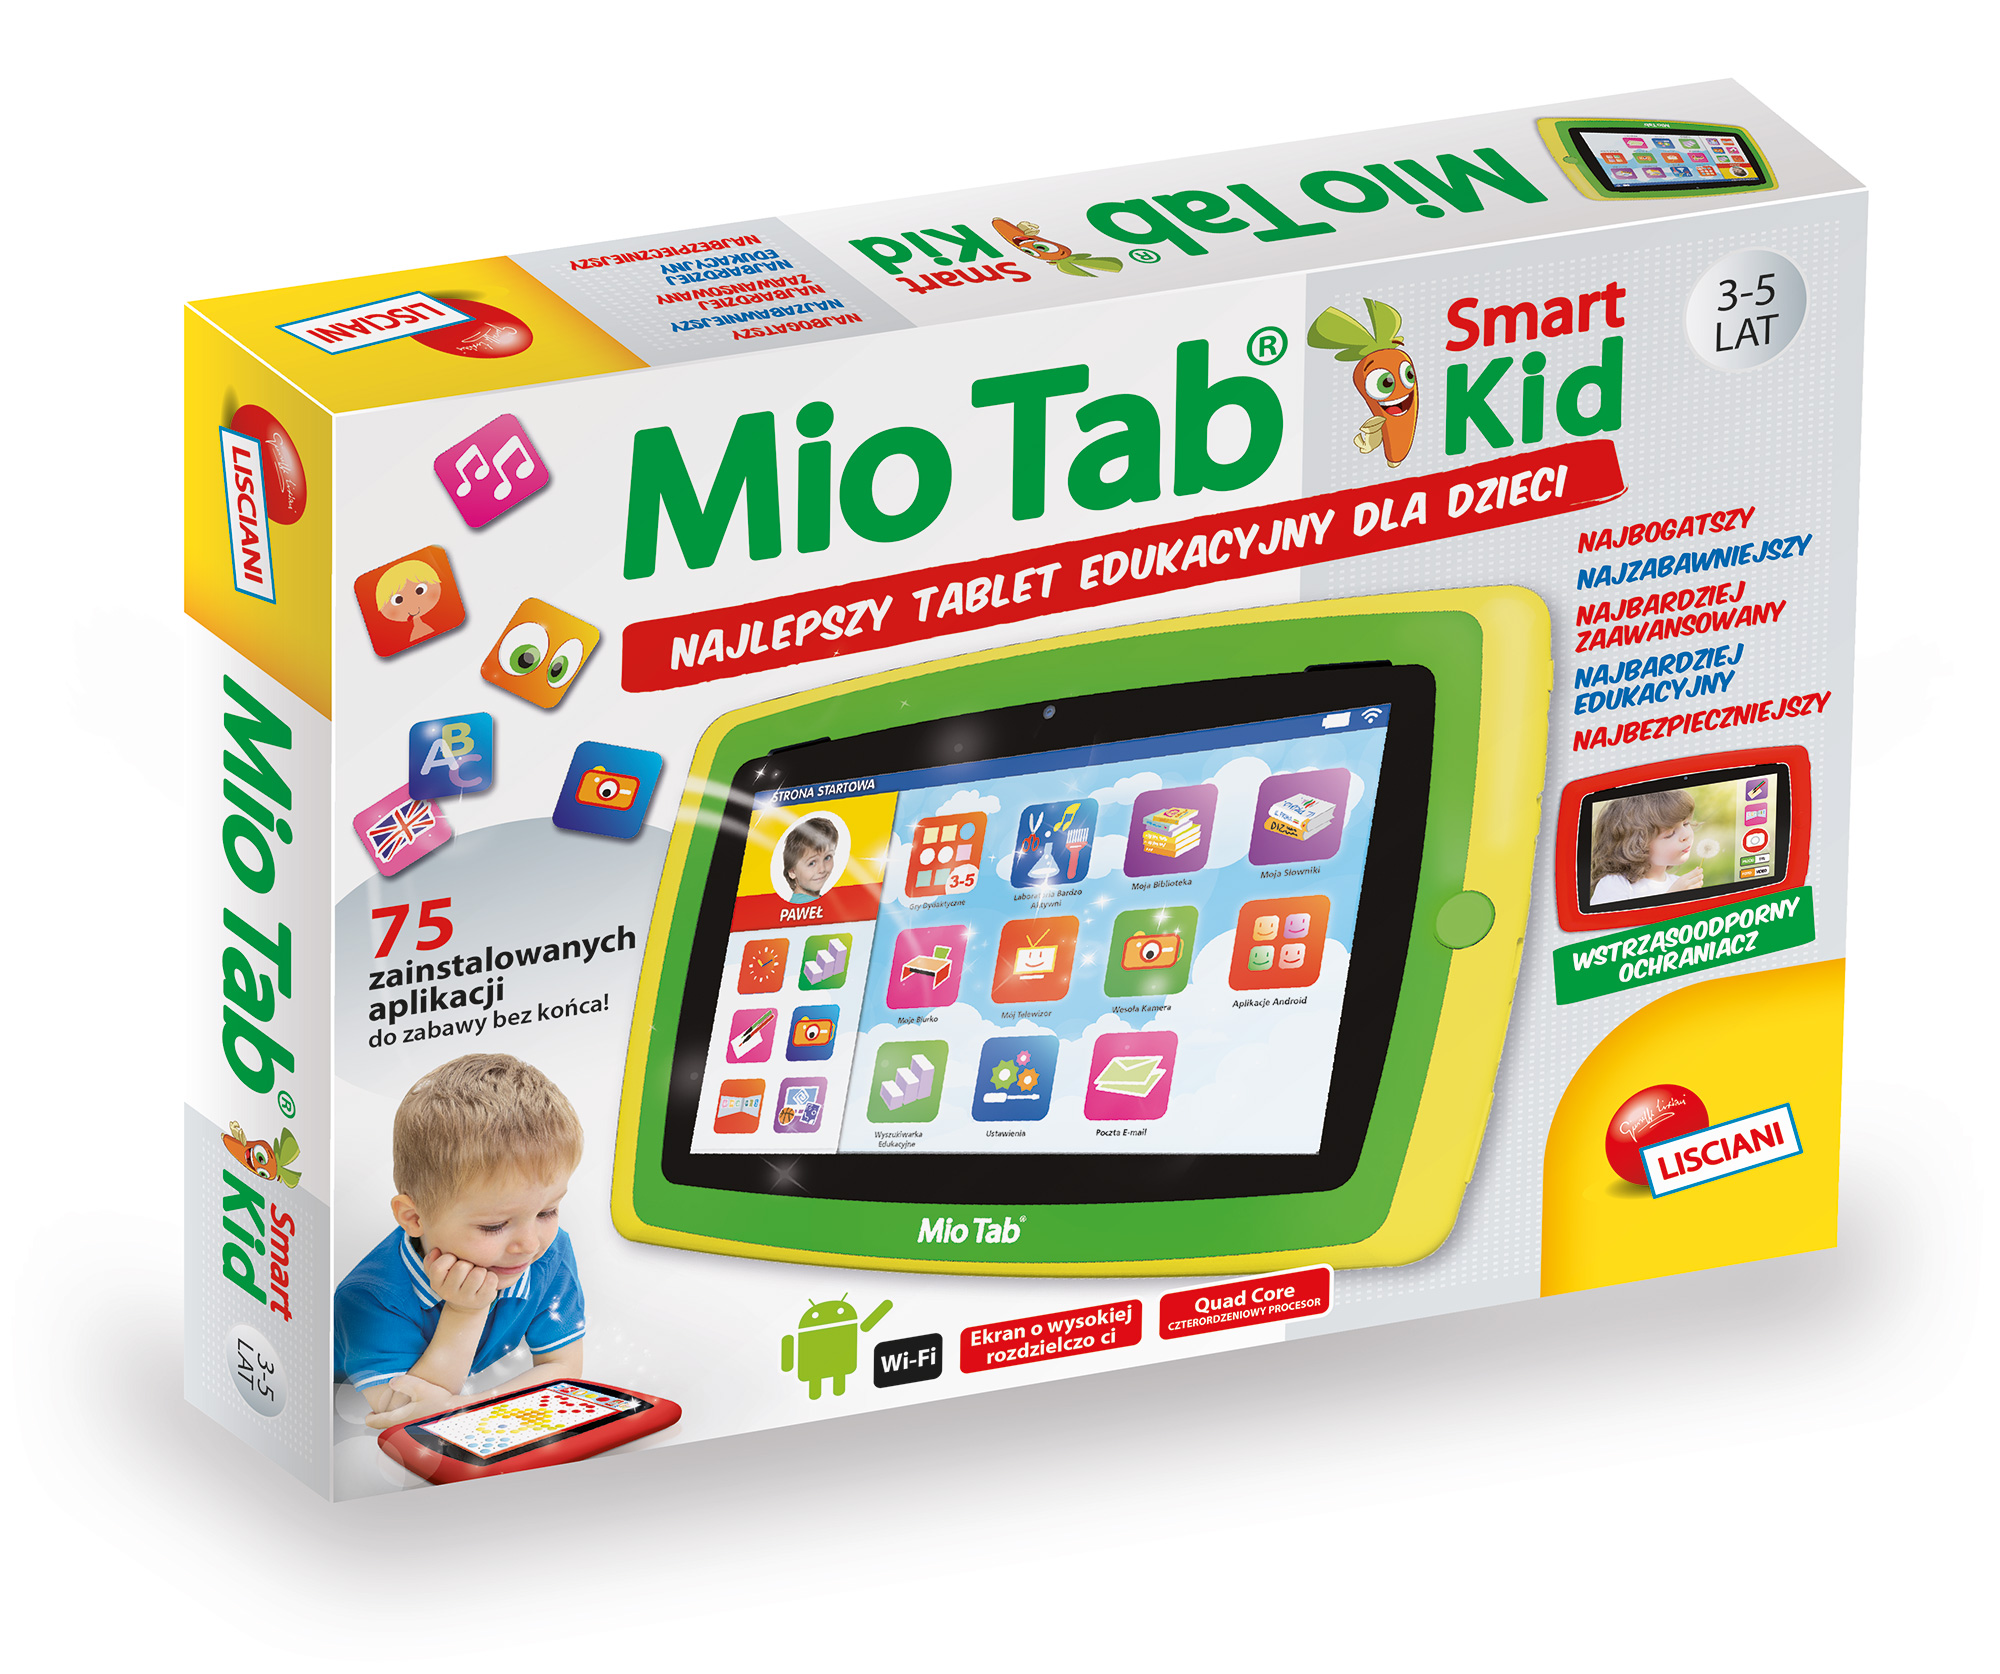 Tablet Edukacyjny Dla 6 Latka Tablet edukacyjny dla najmłodszych Mio Tab Smart Kid 4.0 - RynekZabawek.pl